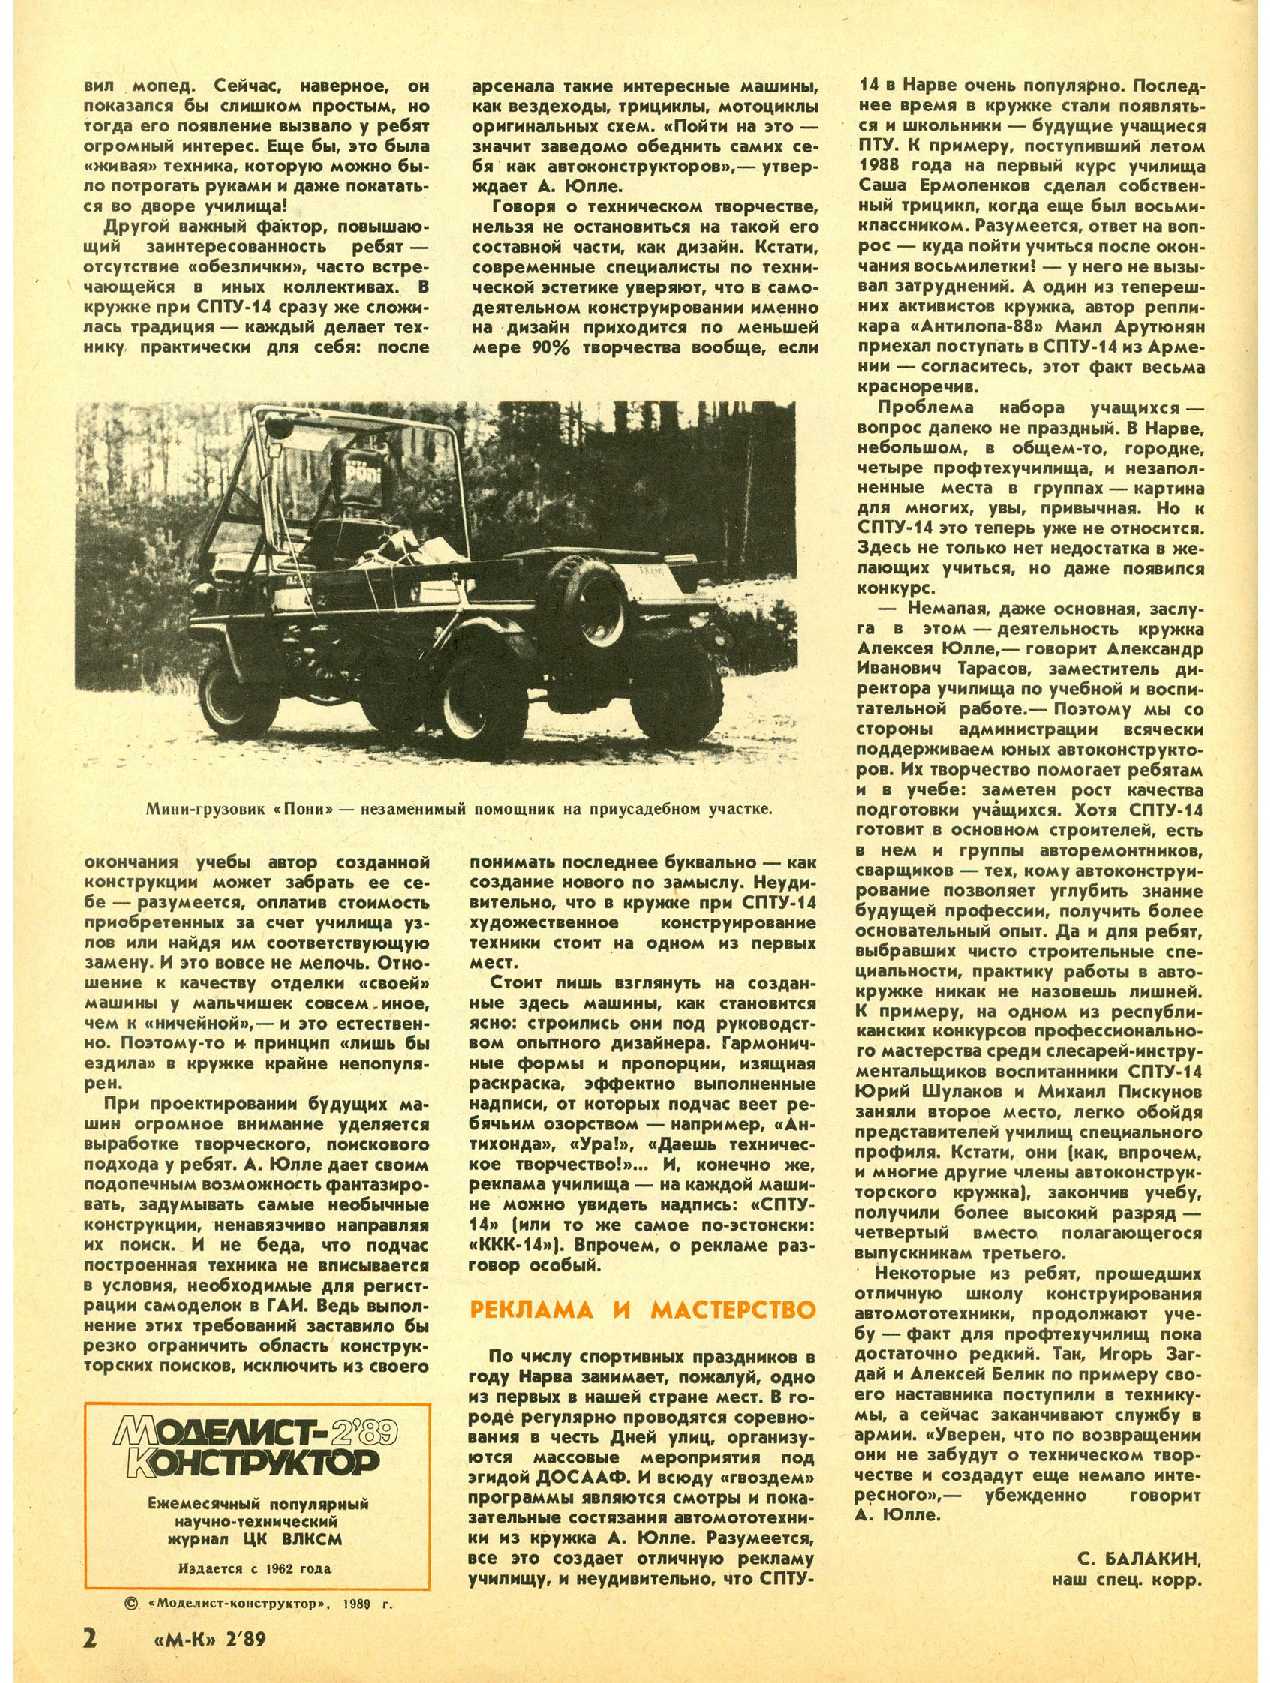 МК 2, 1989, 2 c.